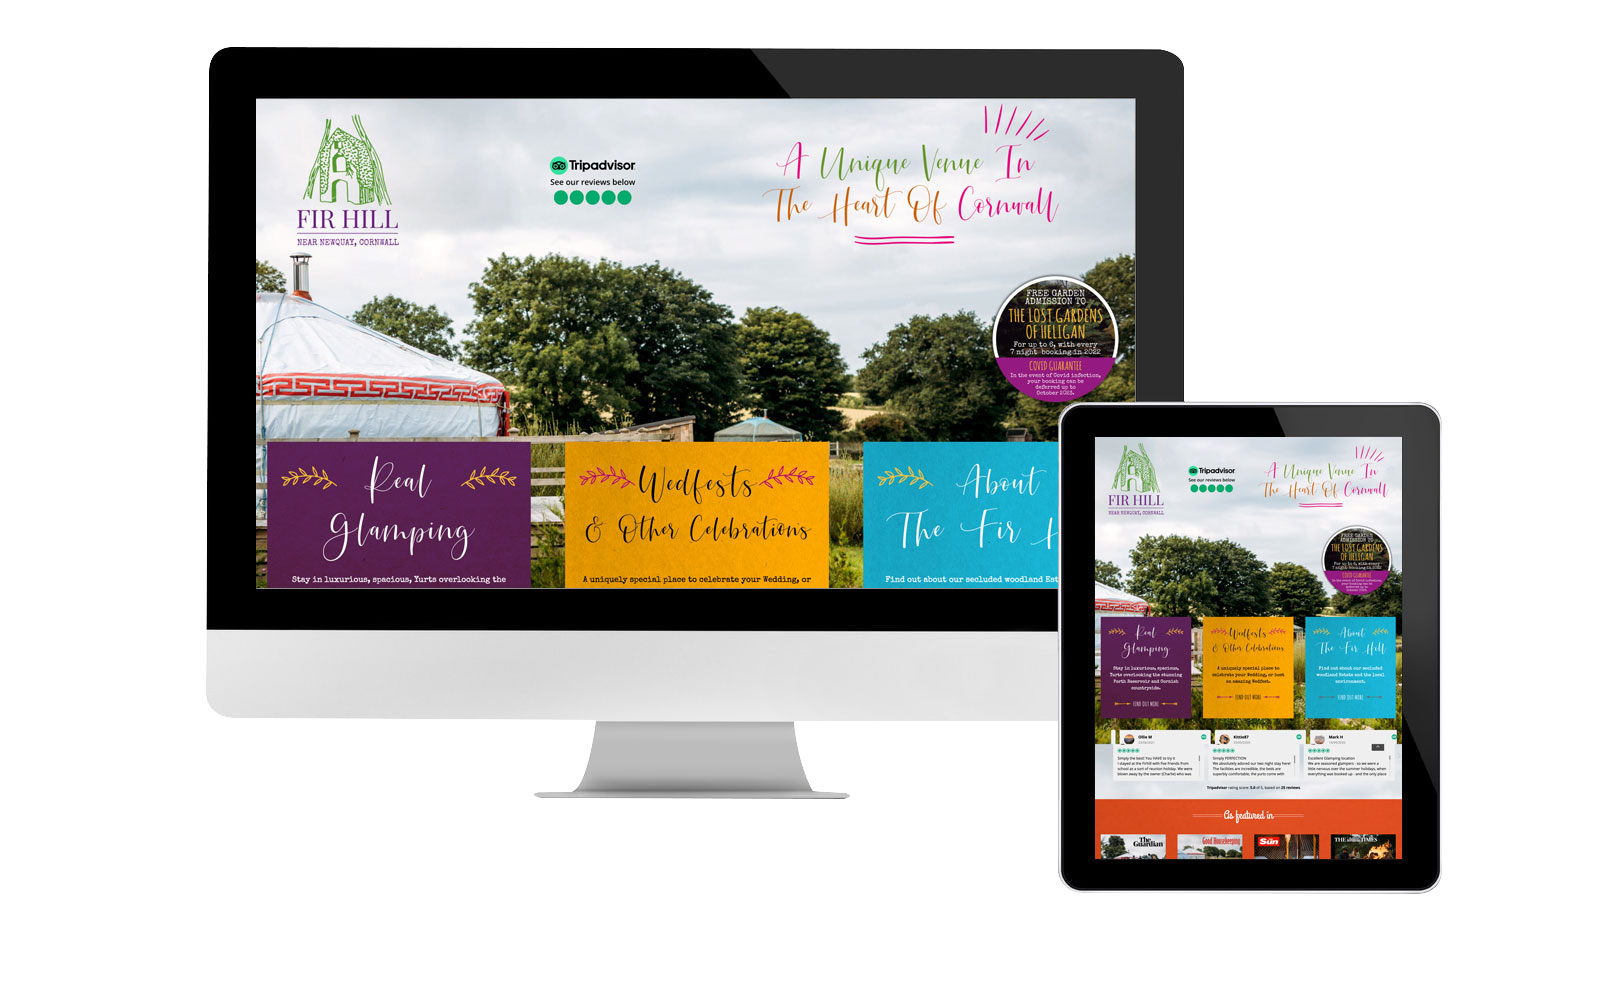 The Fir Hill Glamping website design